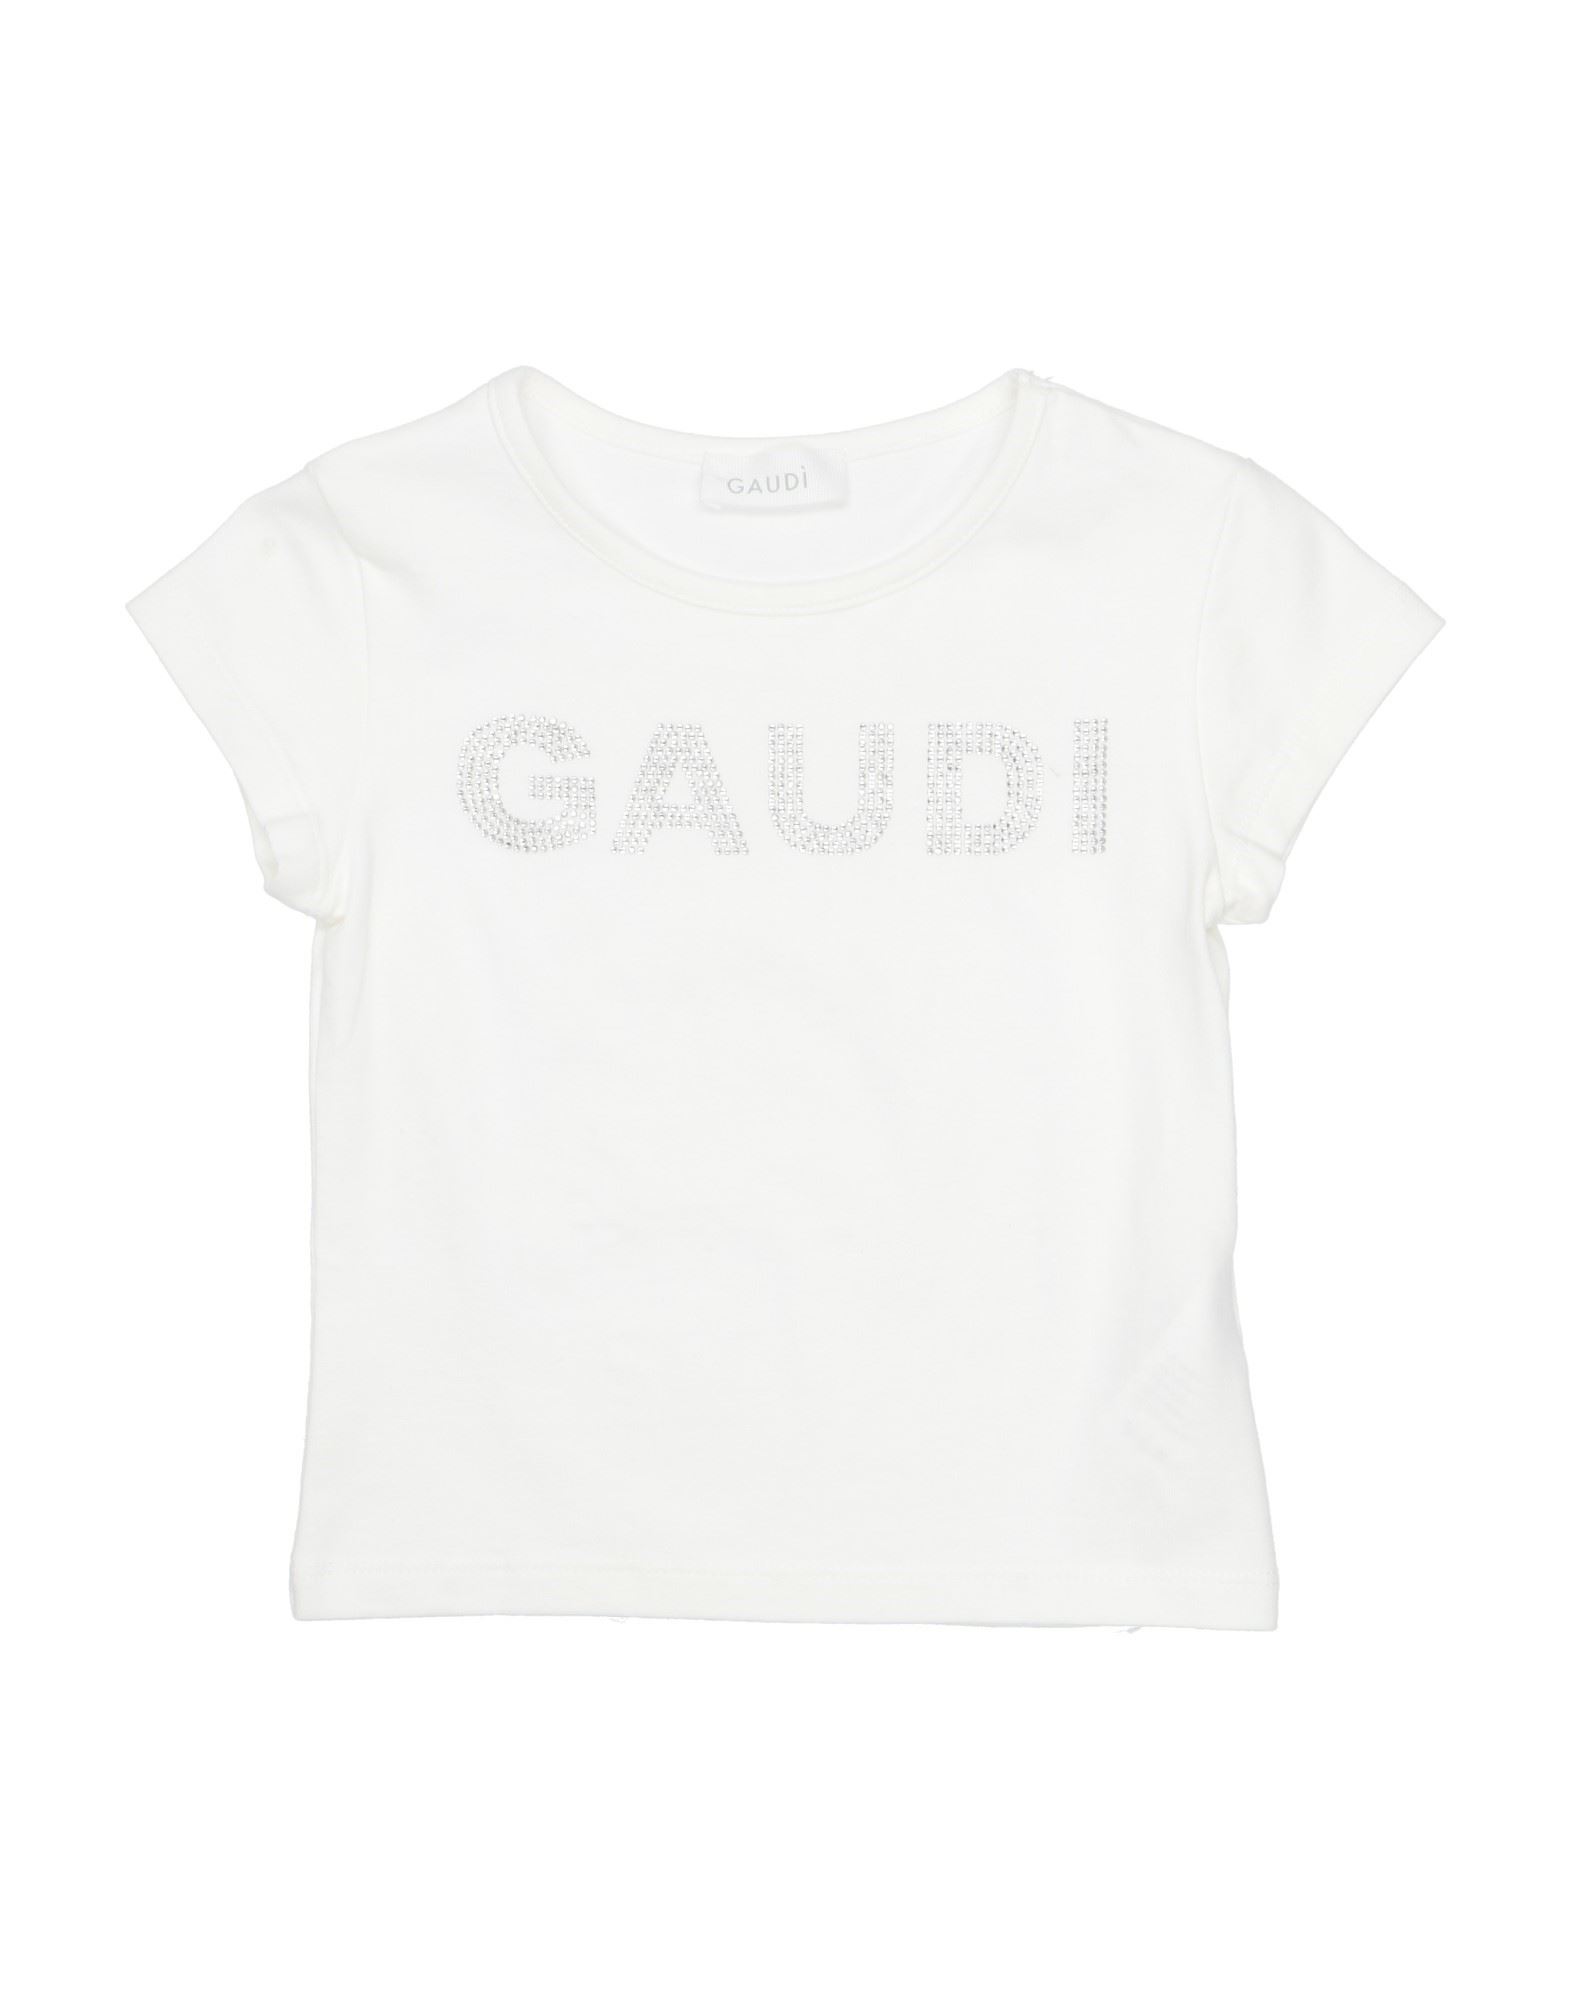 Gaudì Kids'  Toddler Girl T-shirt White Size 7 Cotton, Elastane